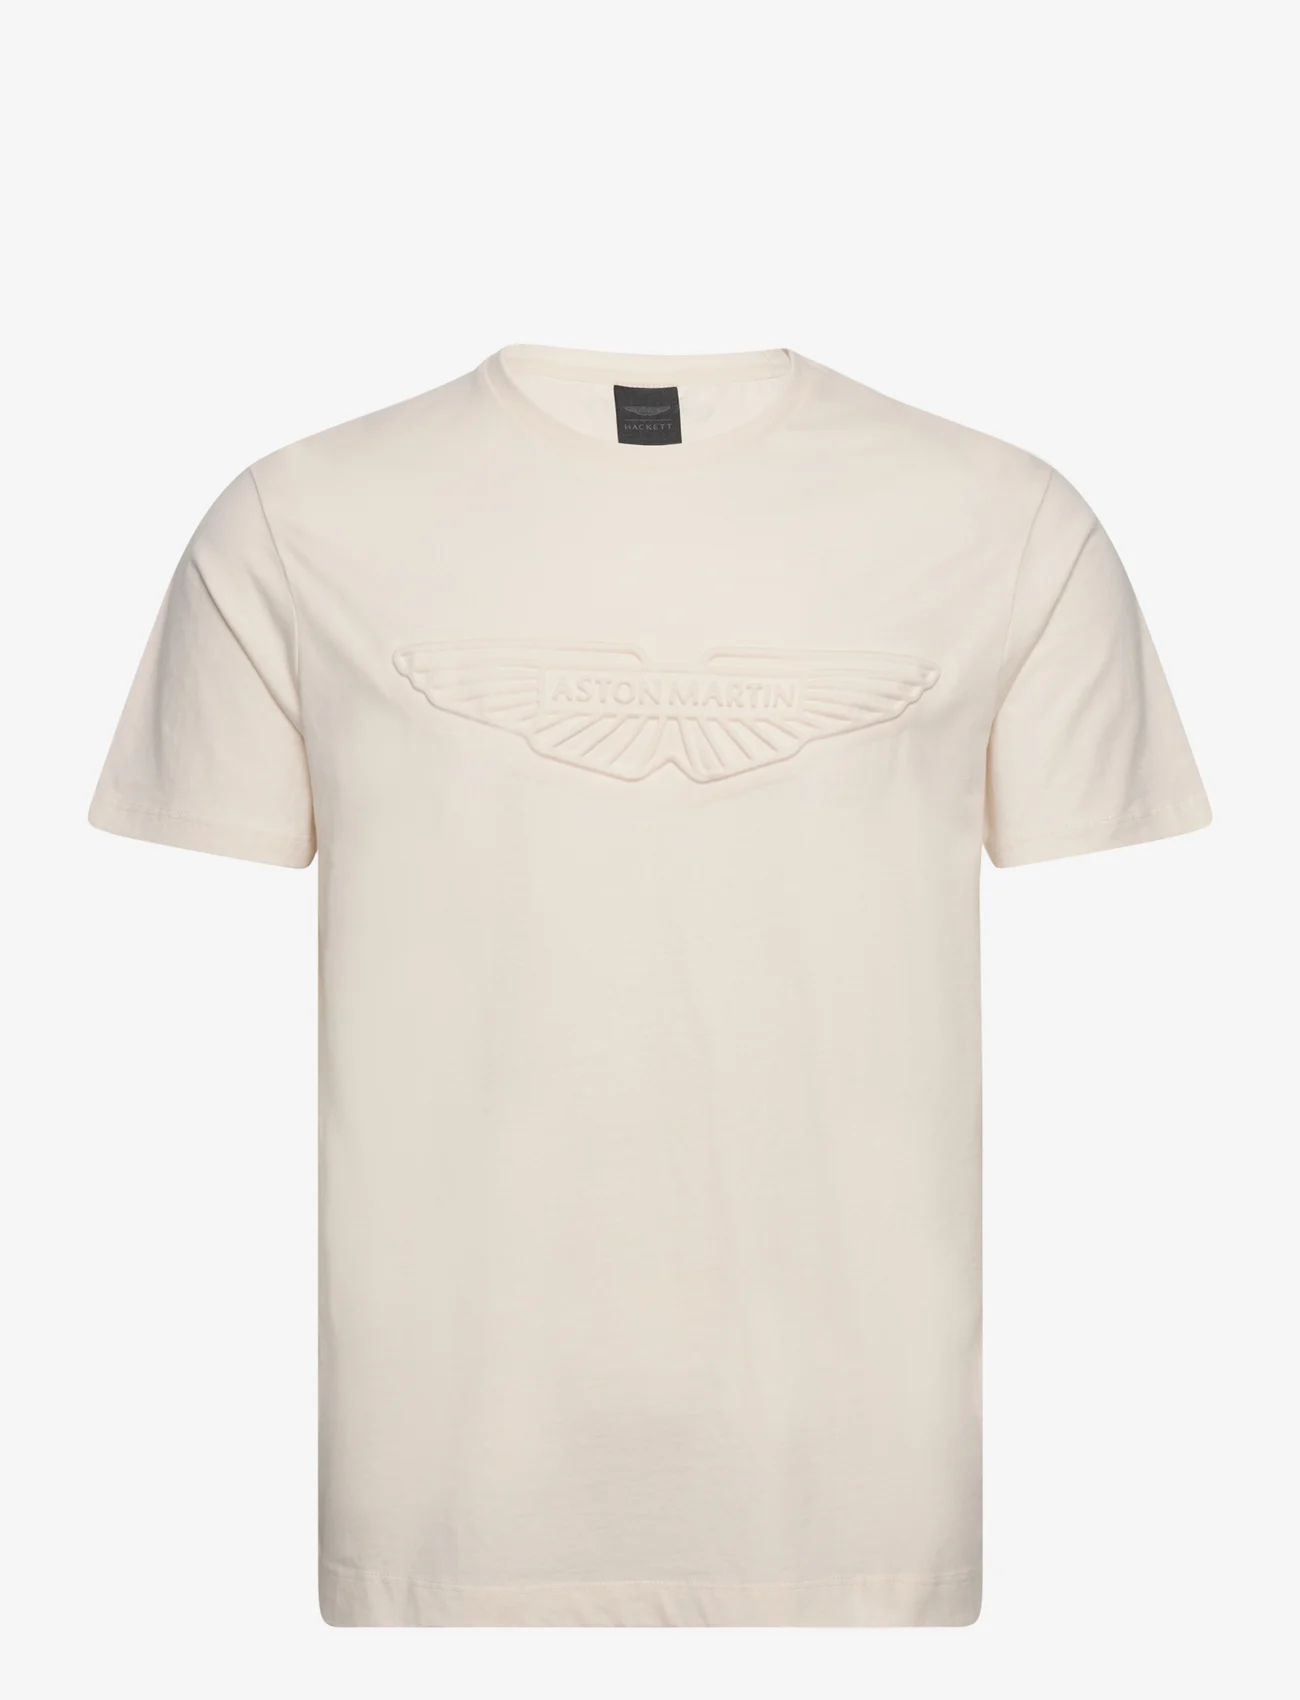 Hackett London - AM EMBOSS TEE - kortermede t-skjorter - ecru white - 0